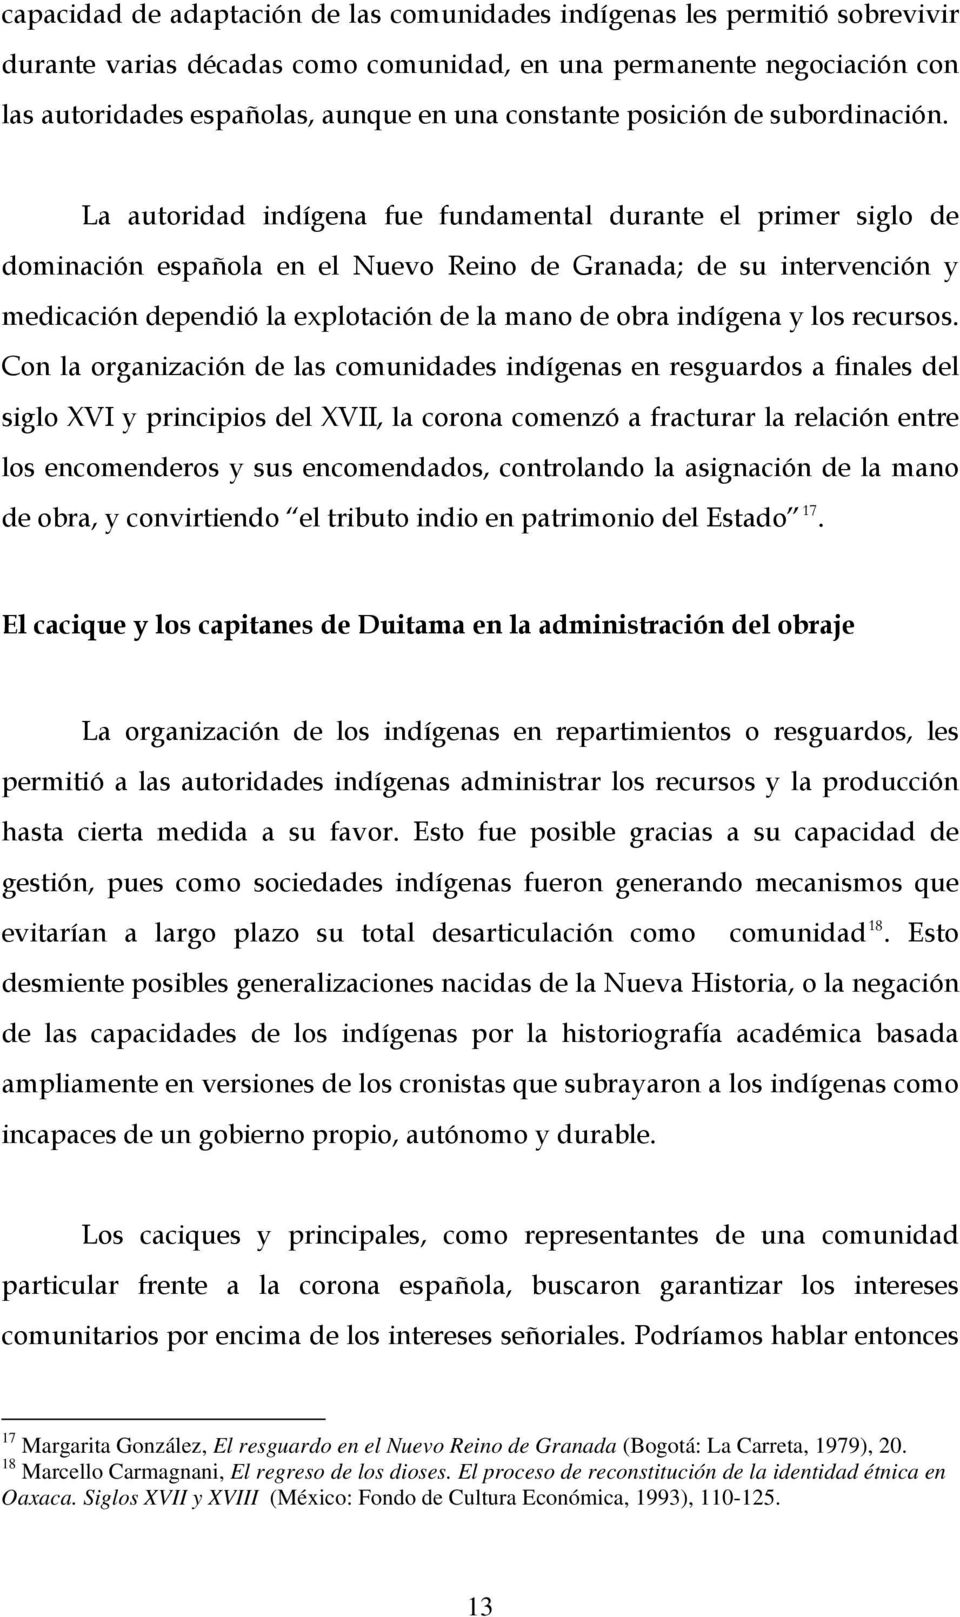 La autoridad indígena fue fundamental durante el primer siglo de dominación española en el Nuevo Reino de Granada; de su intervención y medicación dependió la explotación de la mano de obra indígena